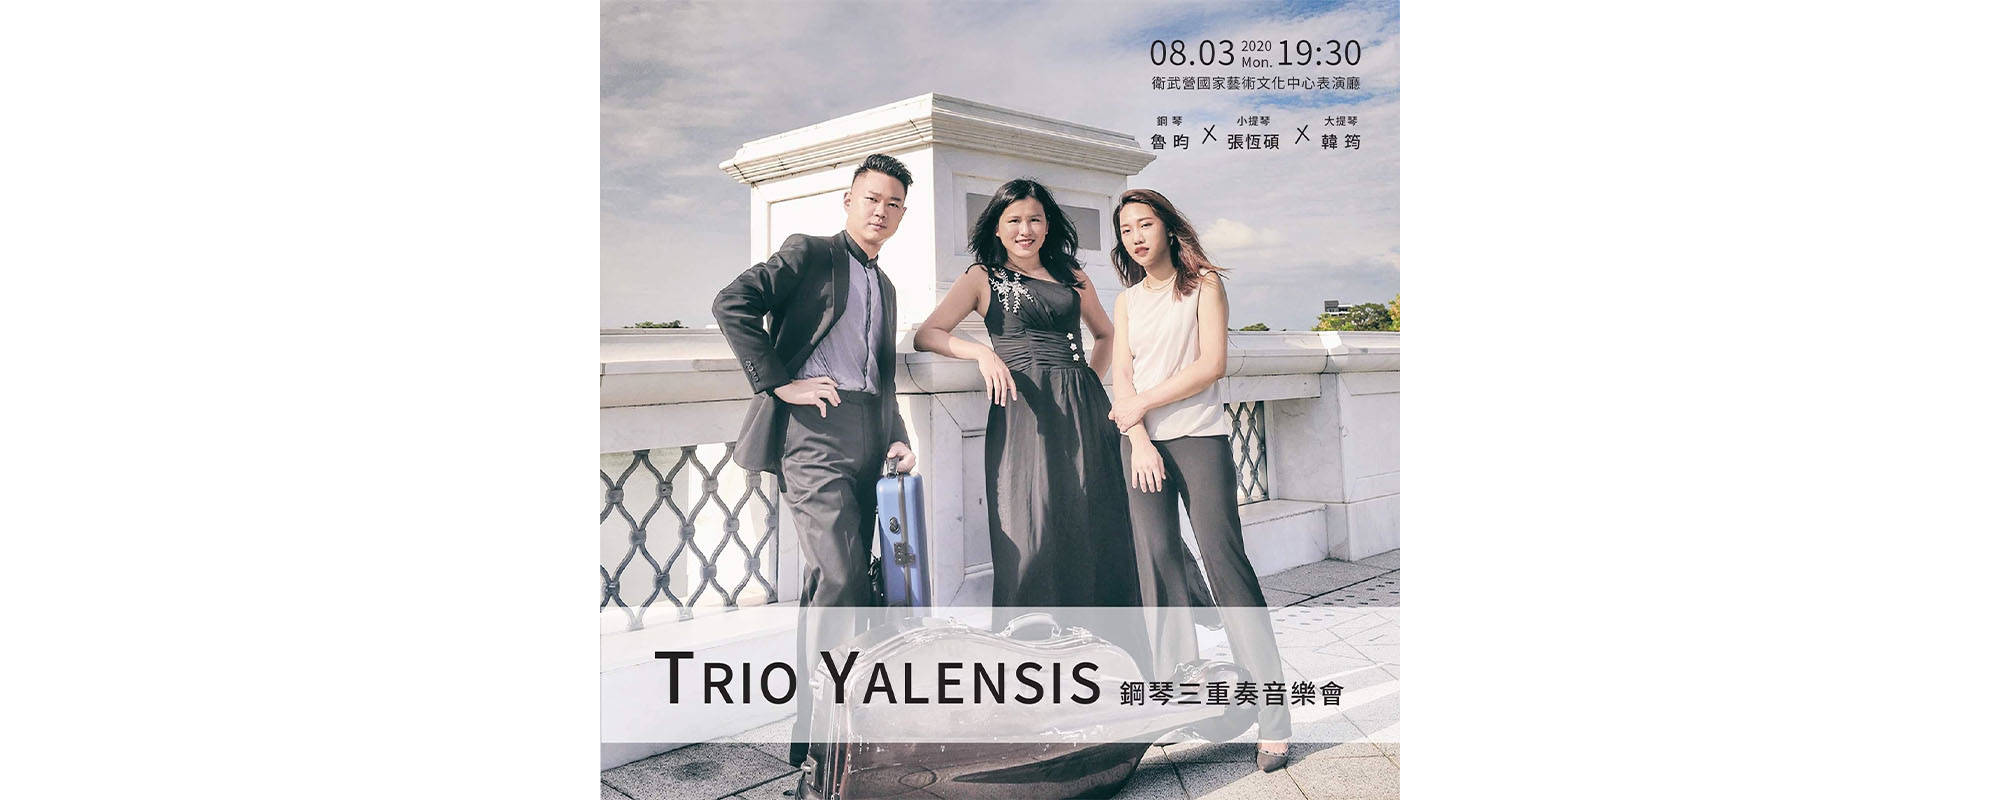 Trio Yalensis 鋼琴三重奏音樂會